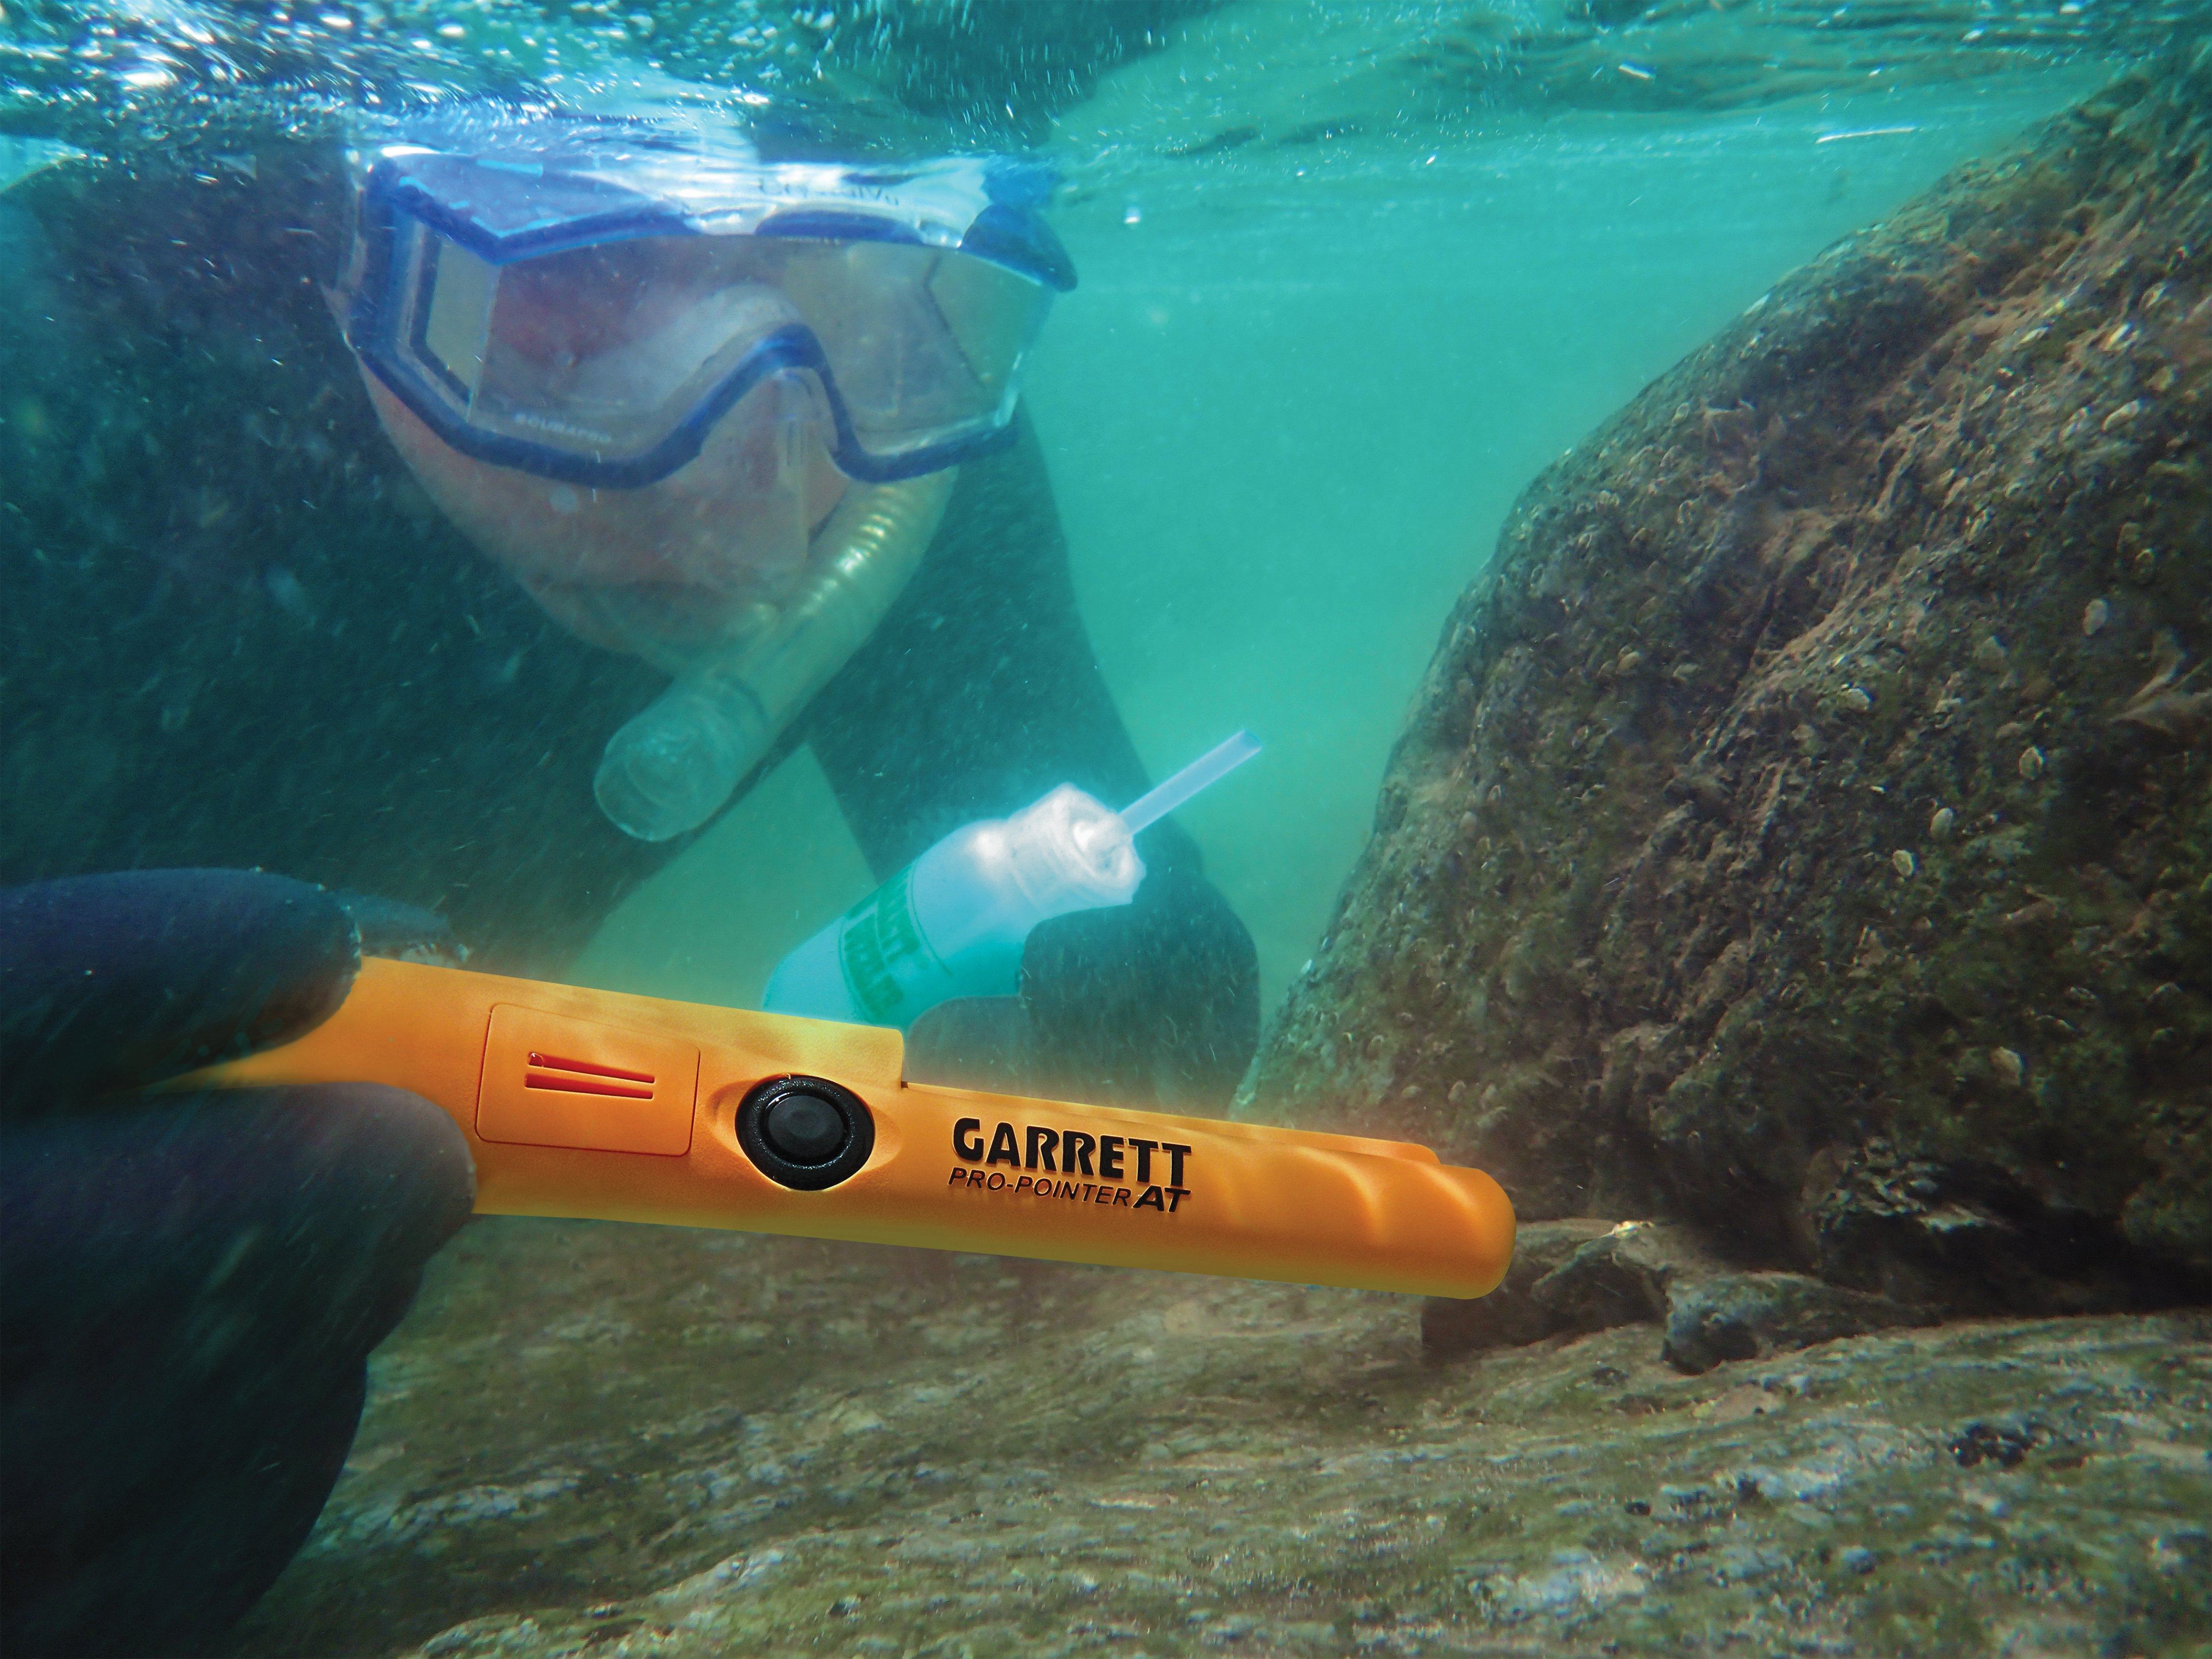 Garrett Pro Pointer AT pinpointer submerged with snorkeler finding gold underwater